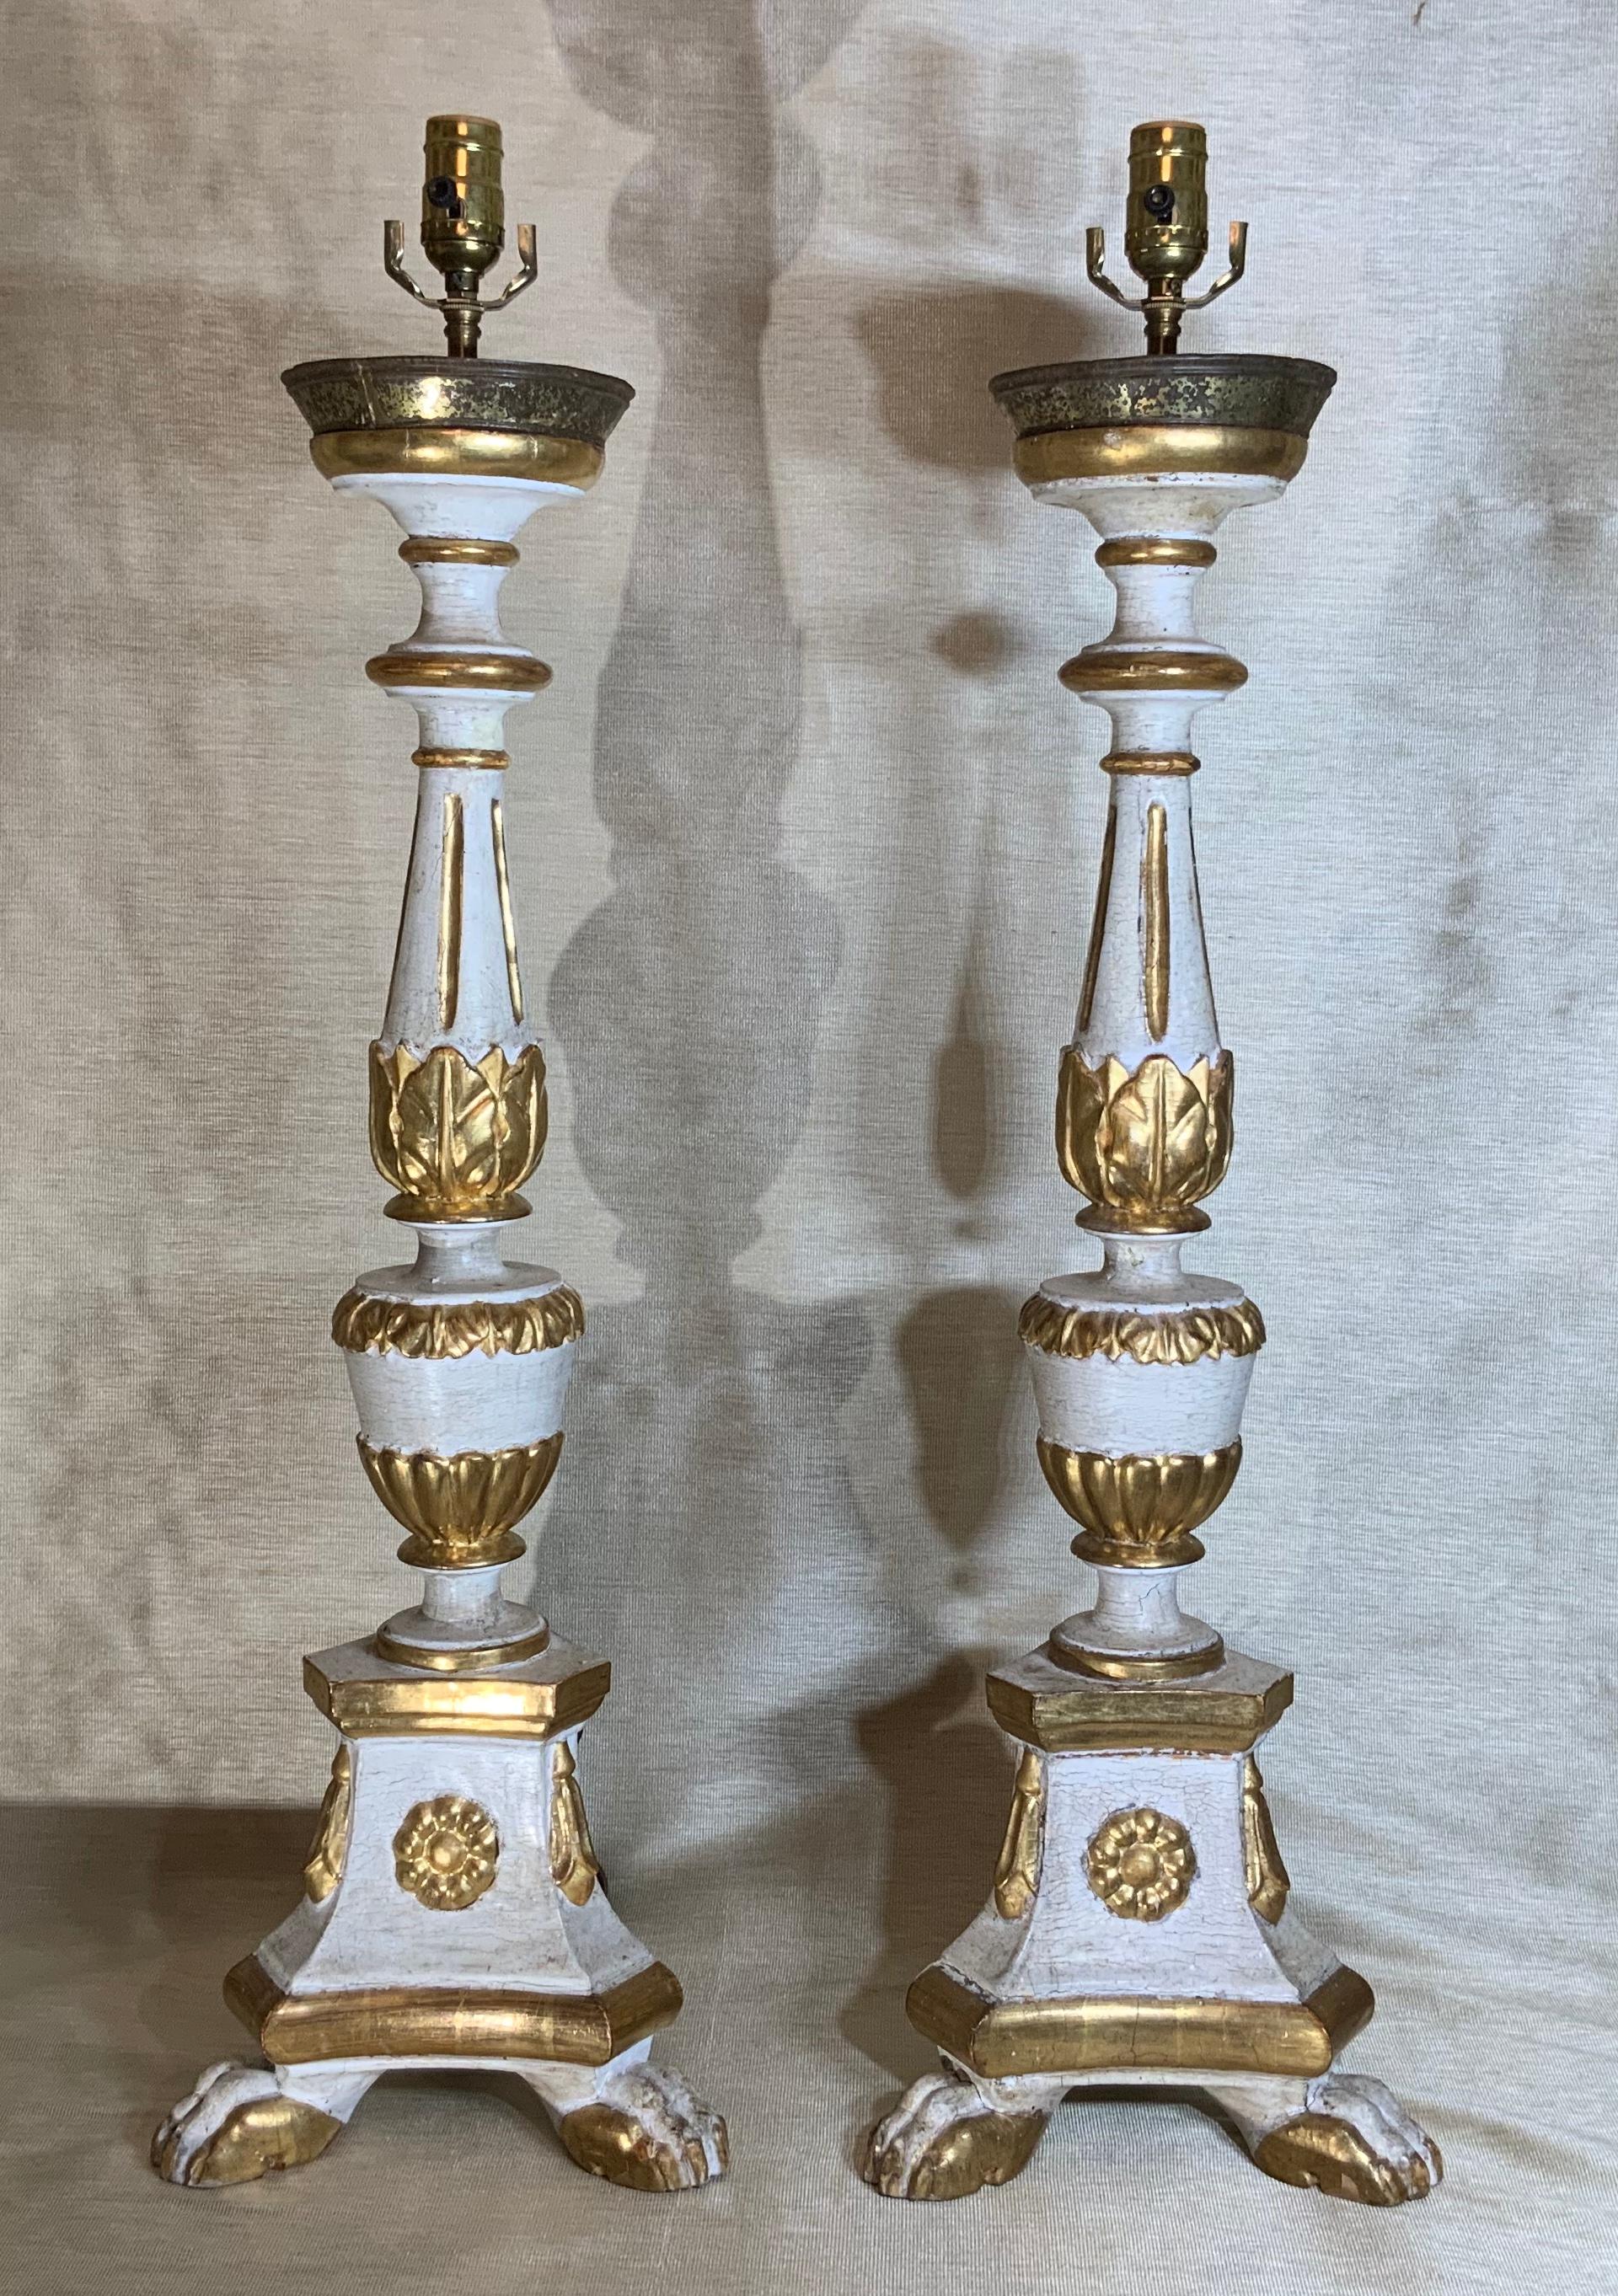 Ein Paar italienische Kerzenständer im neoklassischen Stil, geschnitzt und vergoldet, umgewandelt in schöne Tischlampen, mit weißem cremefarbenem Gesso und vergoldetem polychromem Finish, massivem geschnitztem Holz, zwei vorderen Tatzenfüßen und